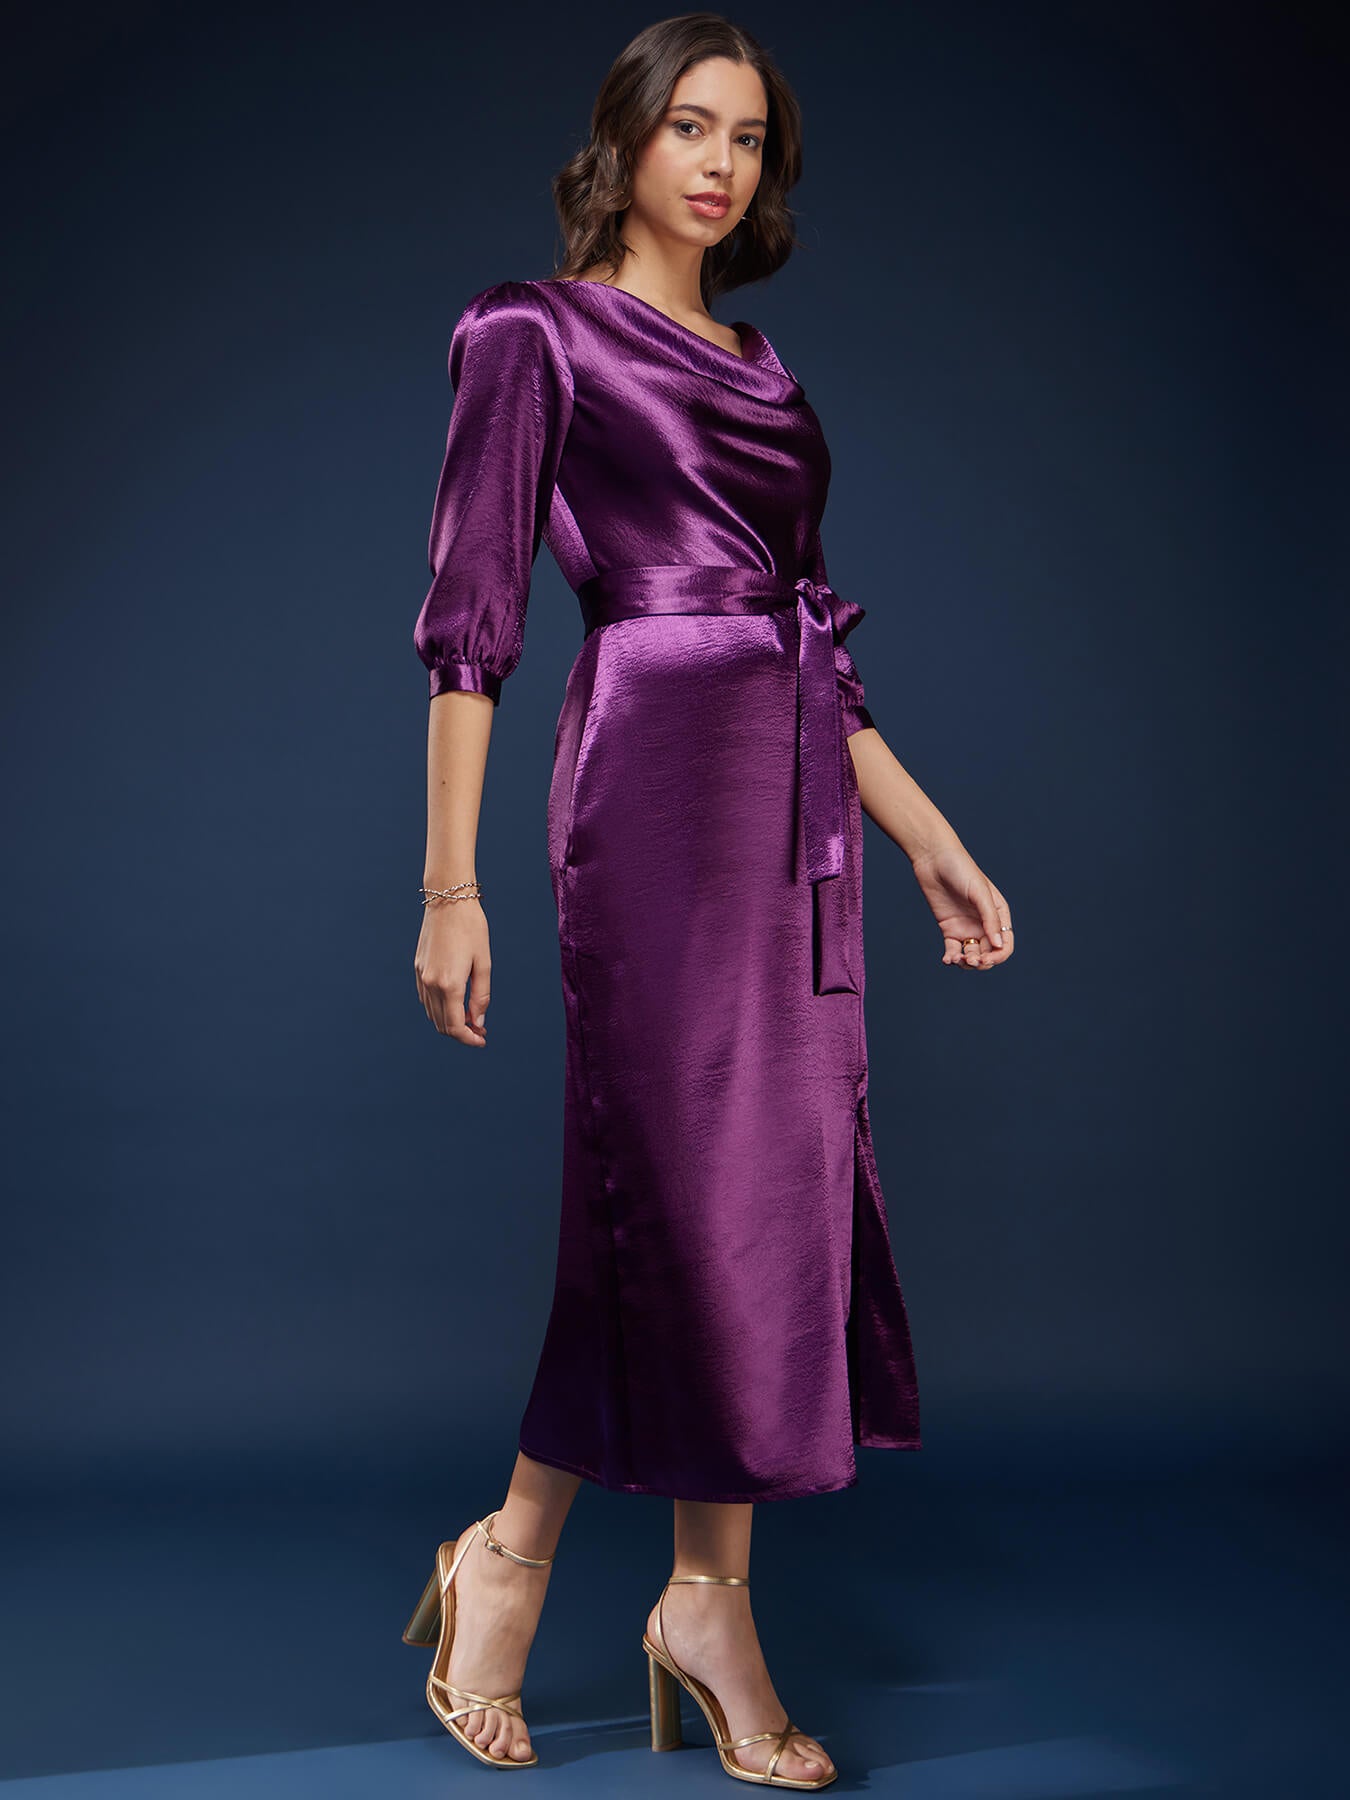 High Gloss Cowl Neck Dress - Purple